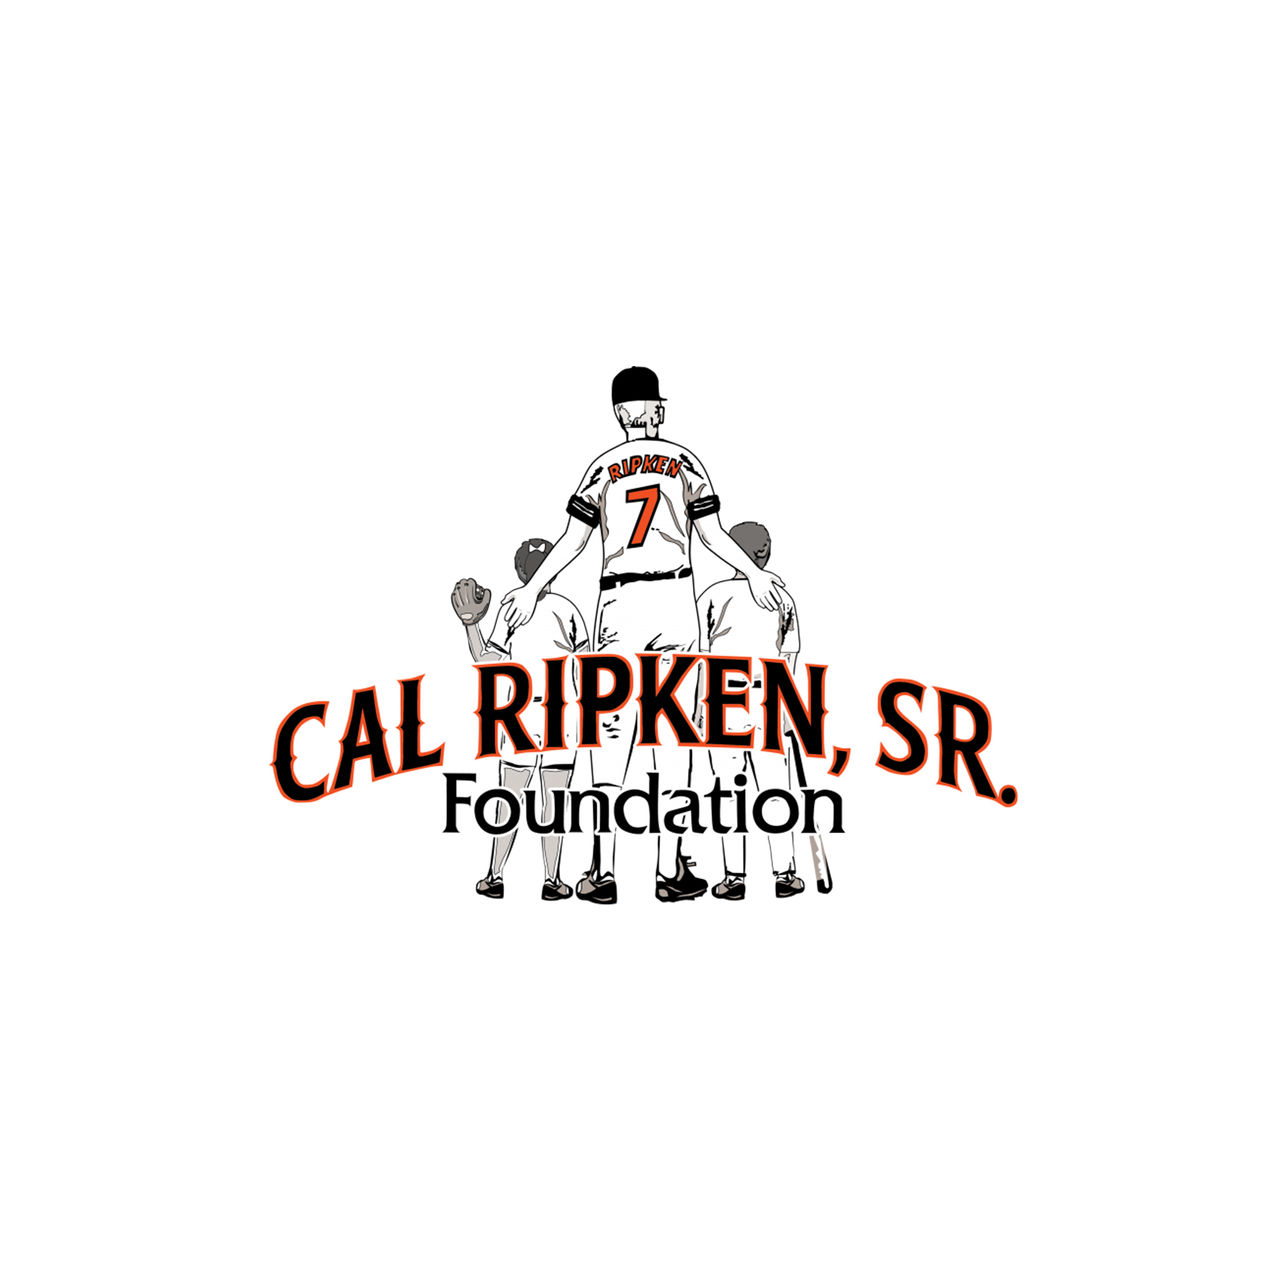 The Cal Ripken, Sr.